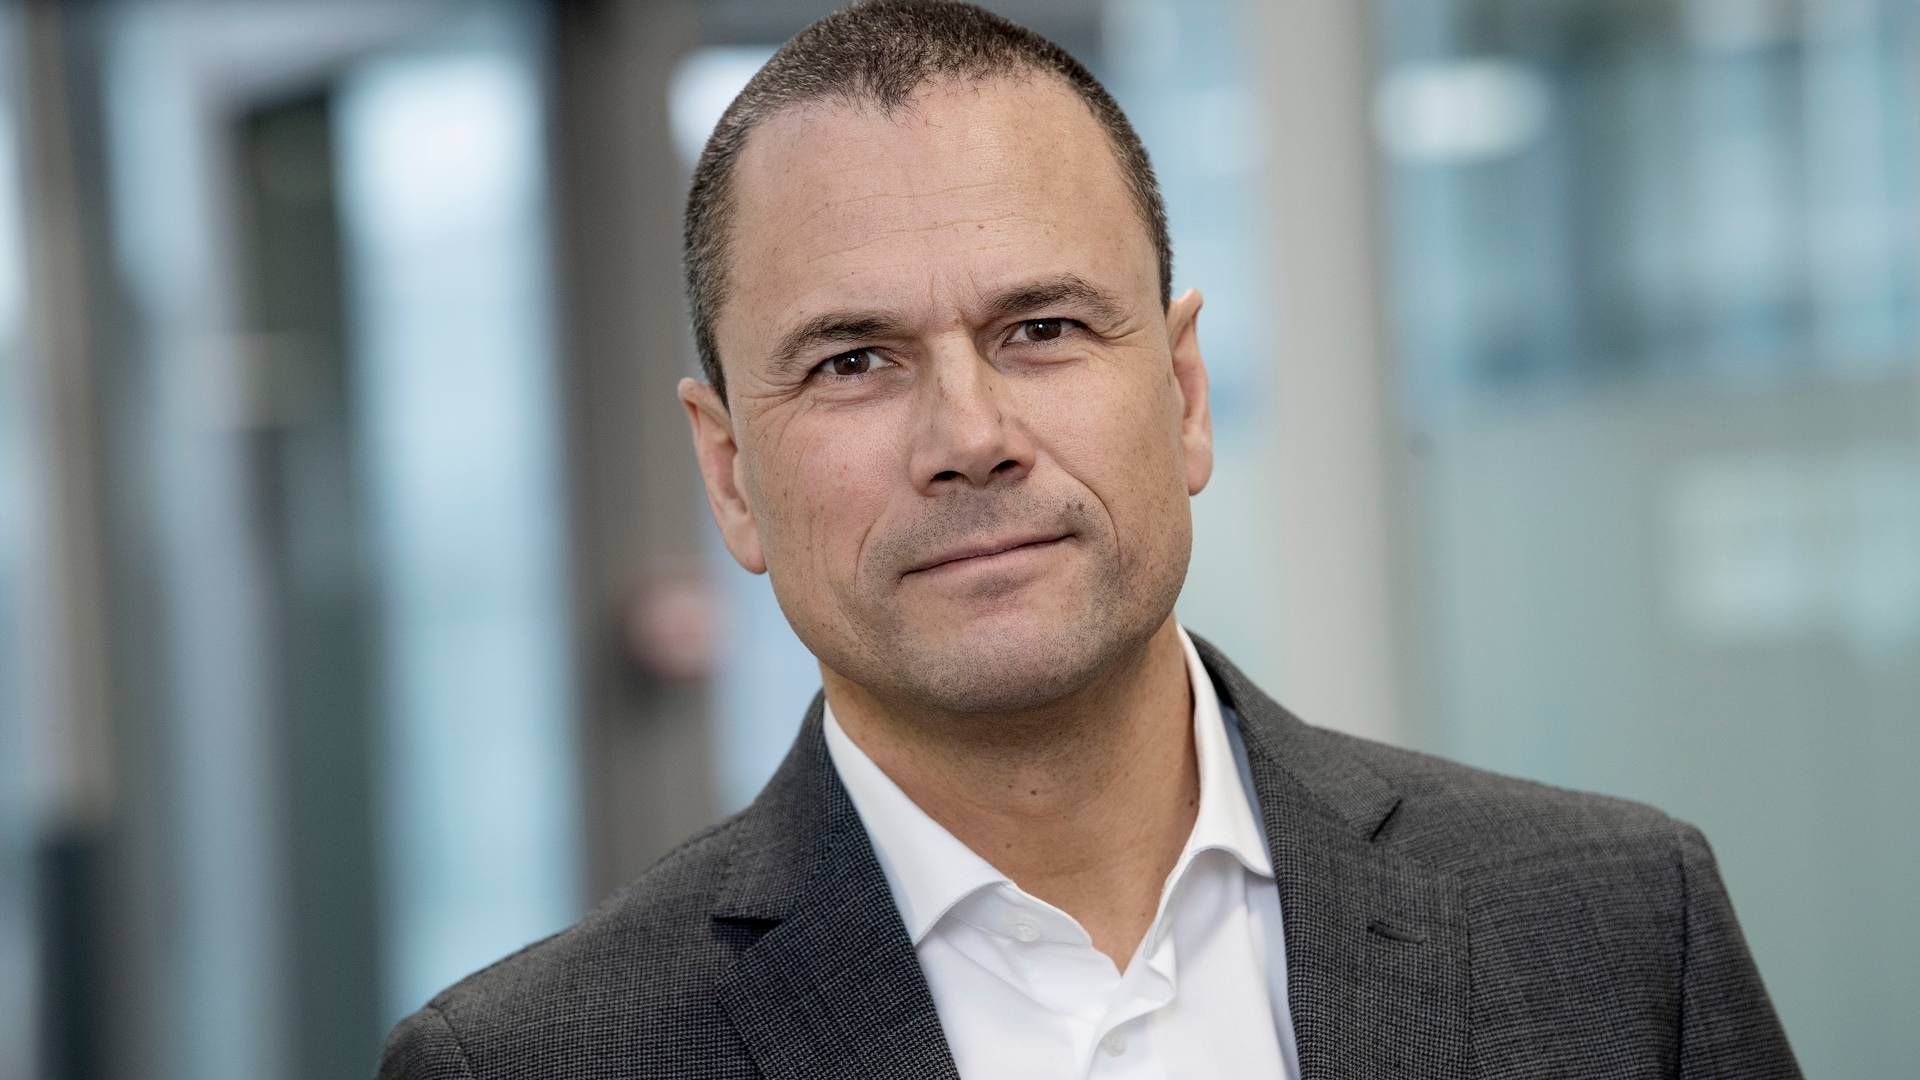 Claudio Christensen kom til Sanistål - part of Ahlsell for to år siden som ny CEO og har en længere karriere i IBM bag sig. | Foto: Lars Horn